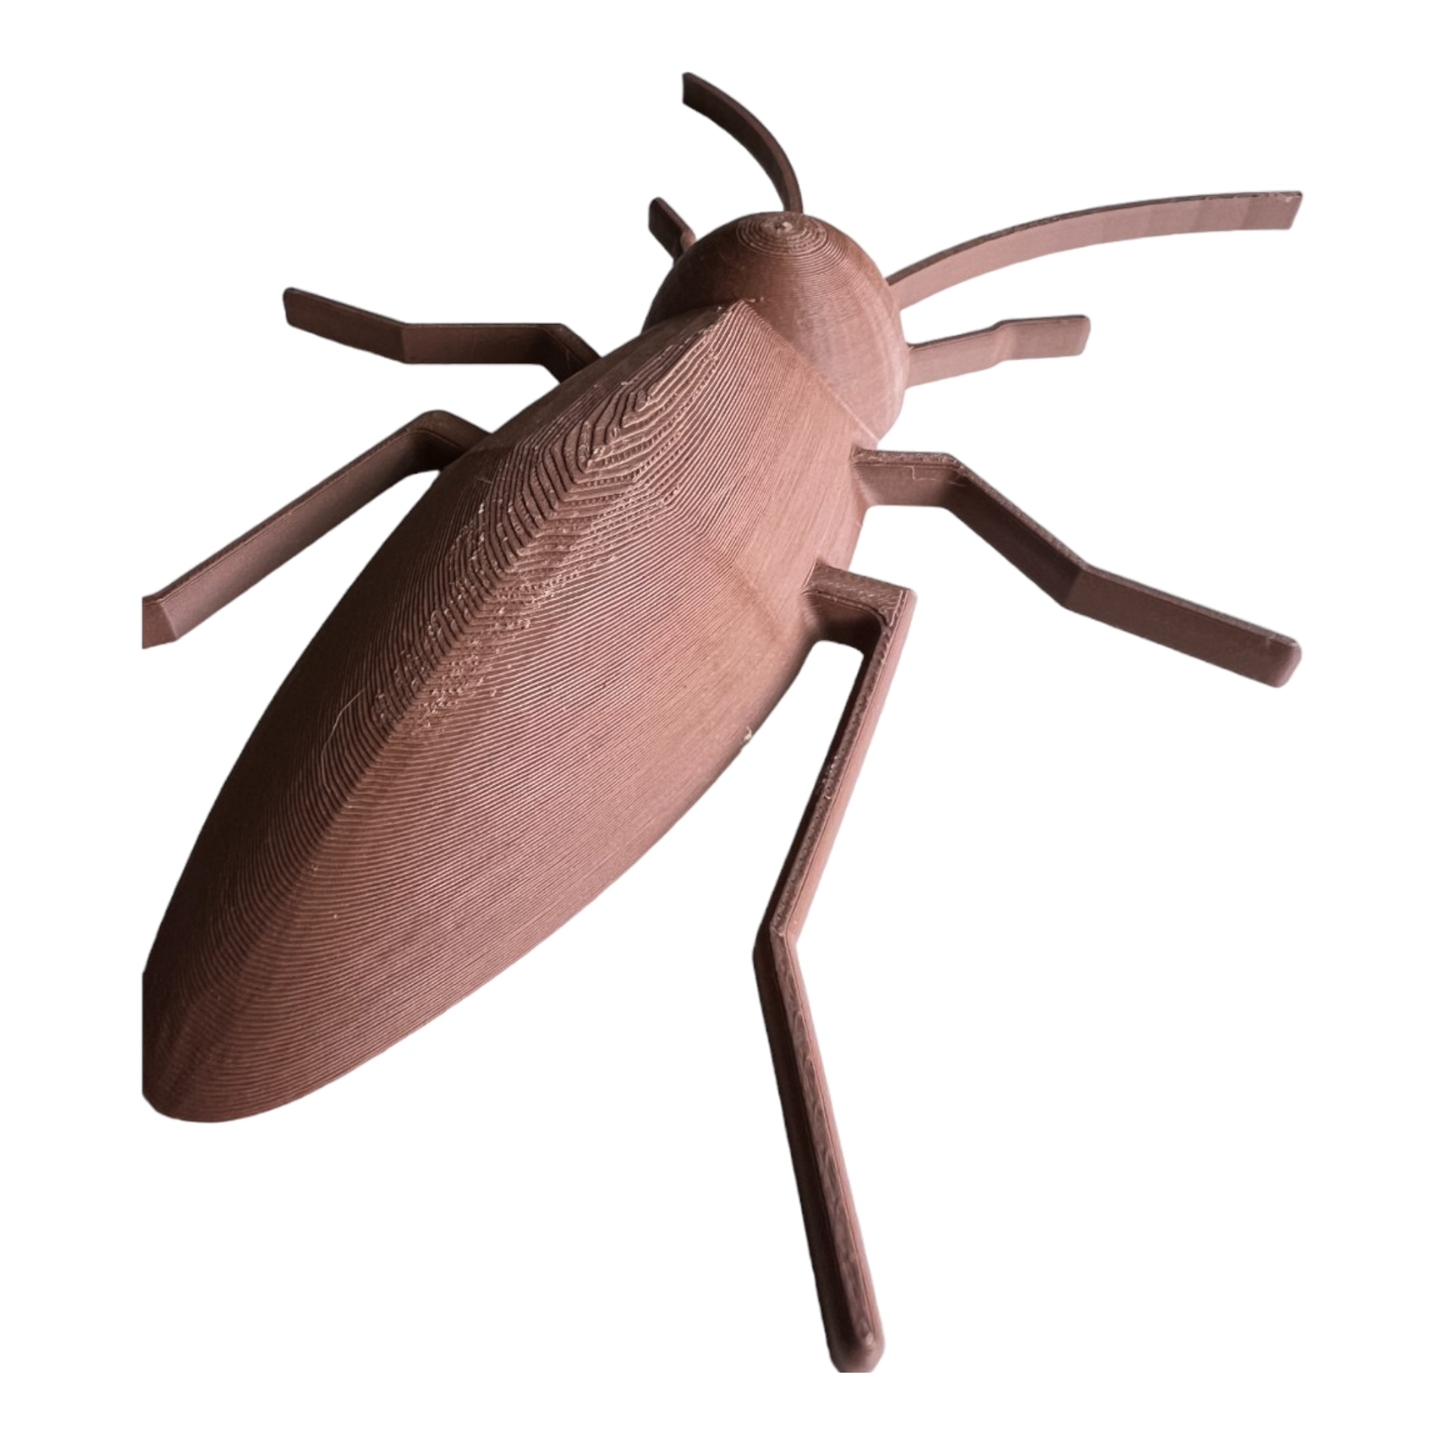 Cockroach Play Mold